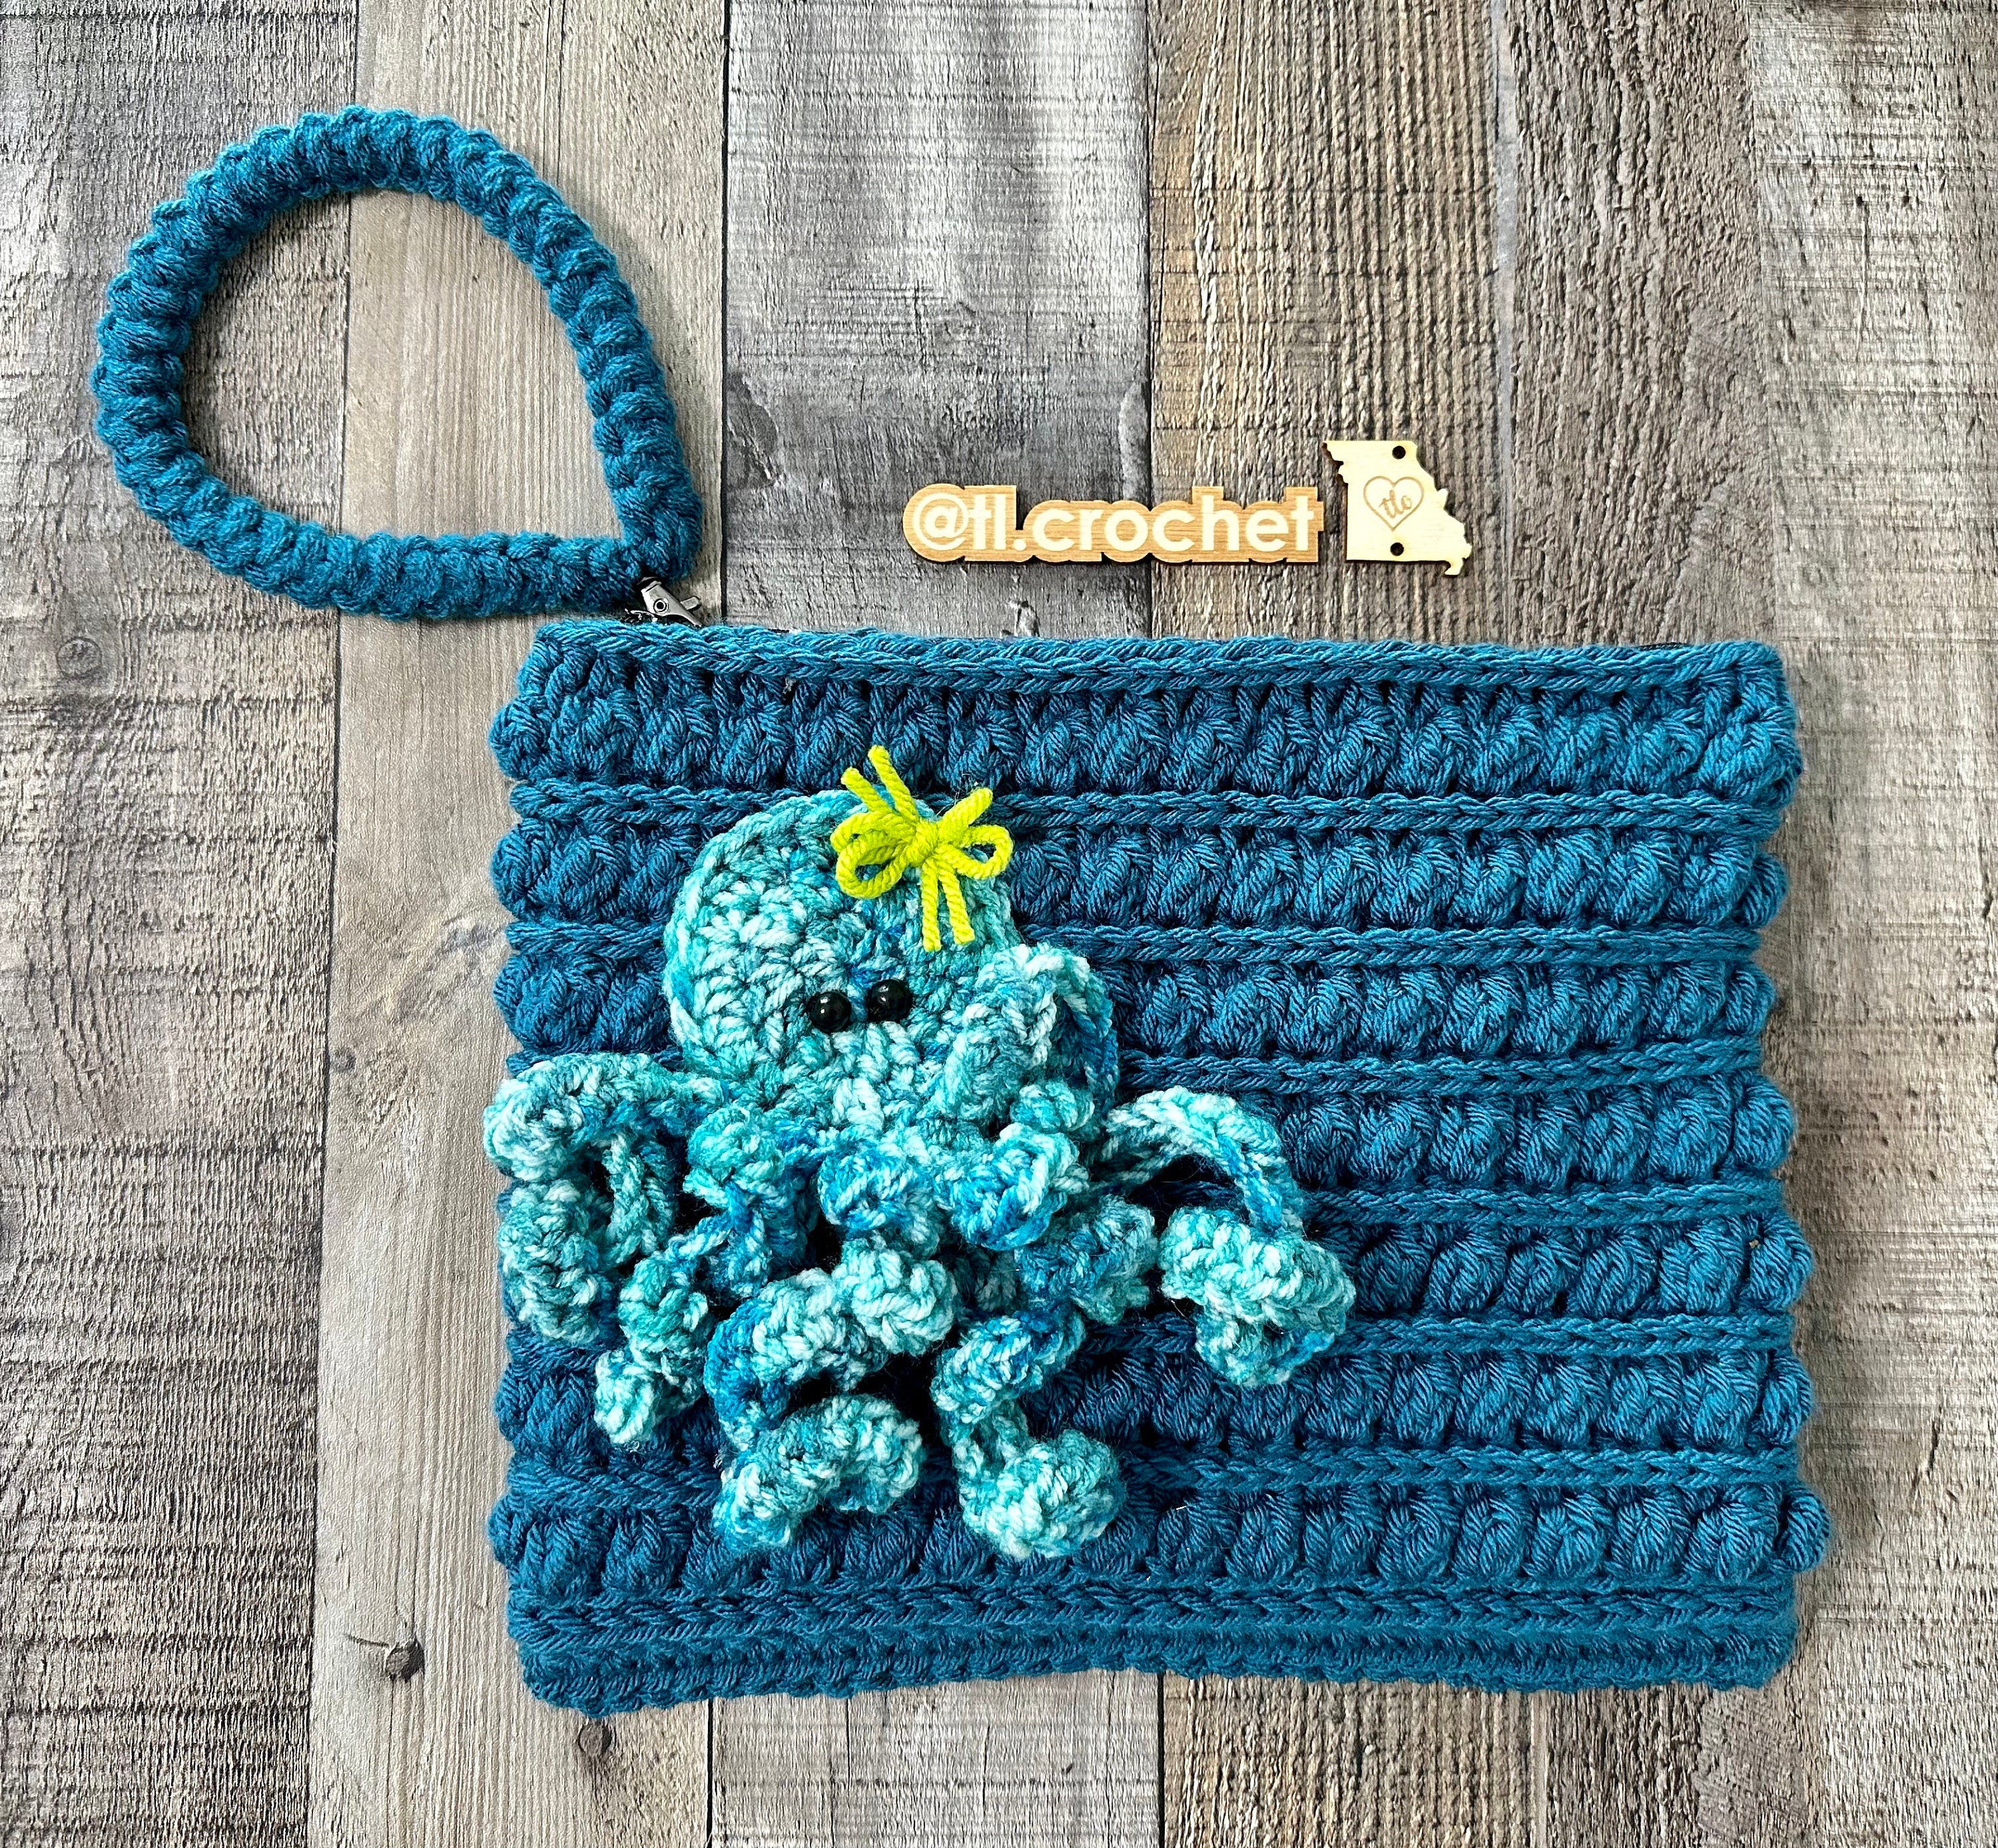 Free Knit-Look Crochet Mitten Pattern For Adults